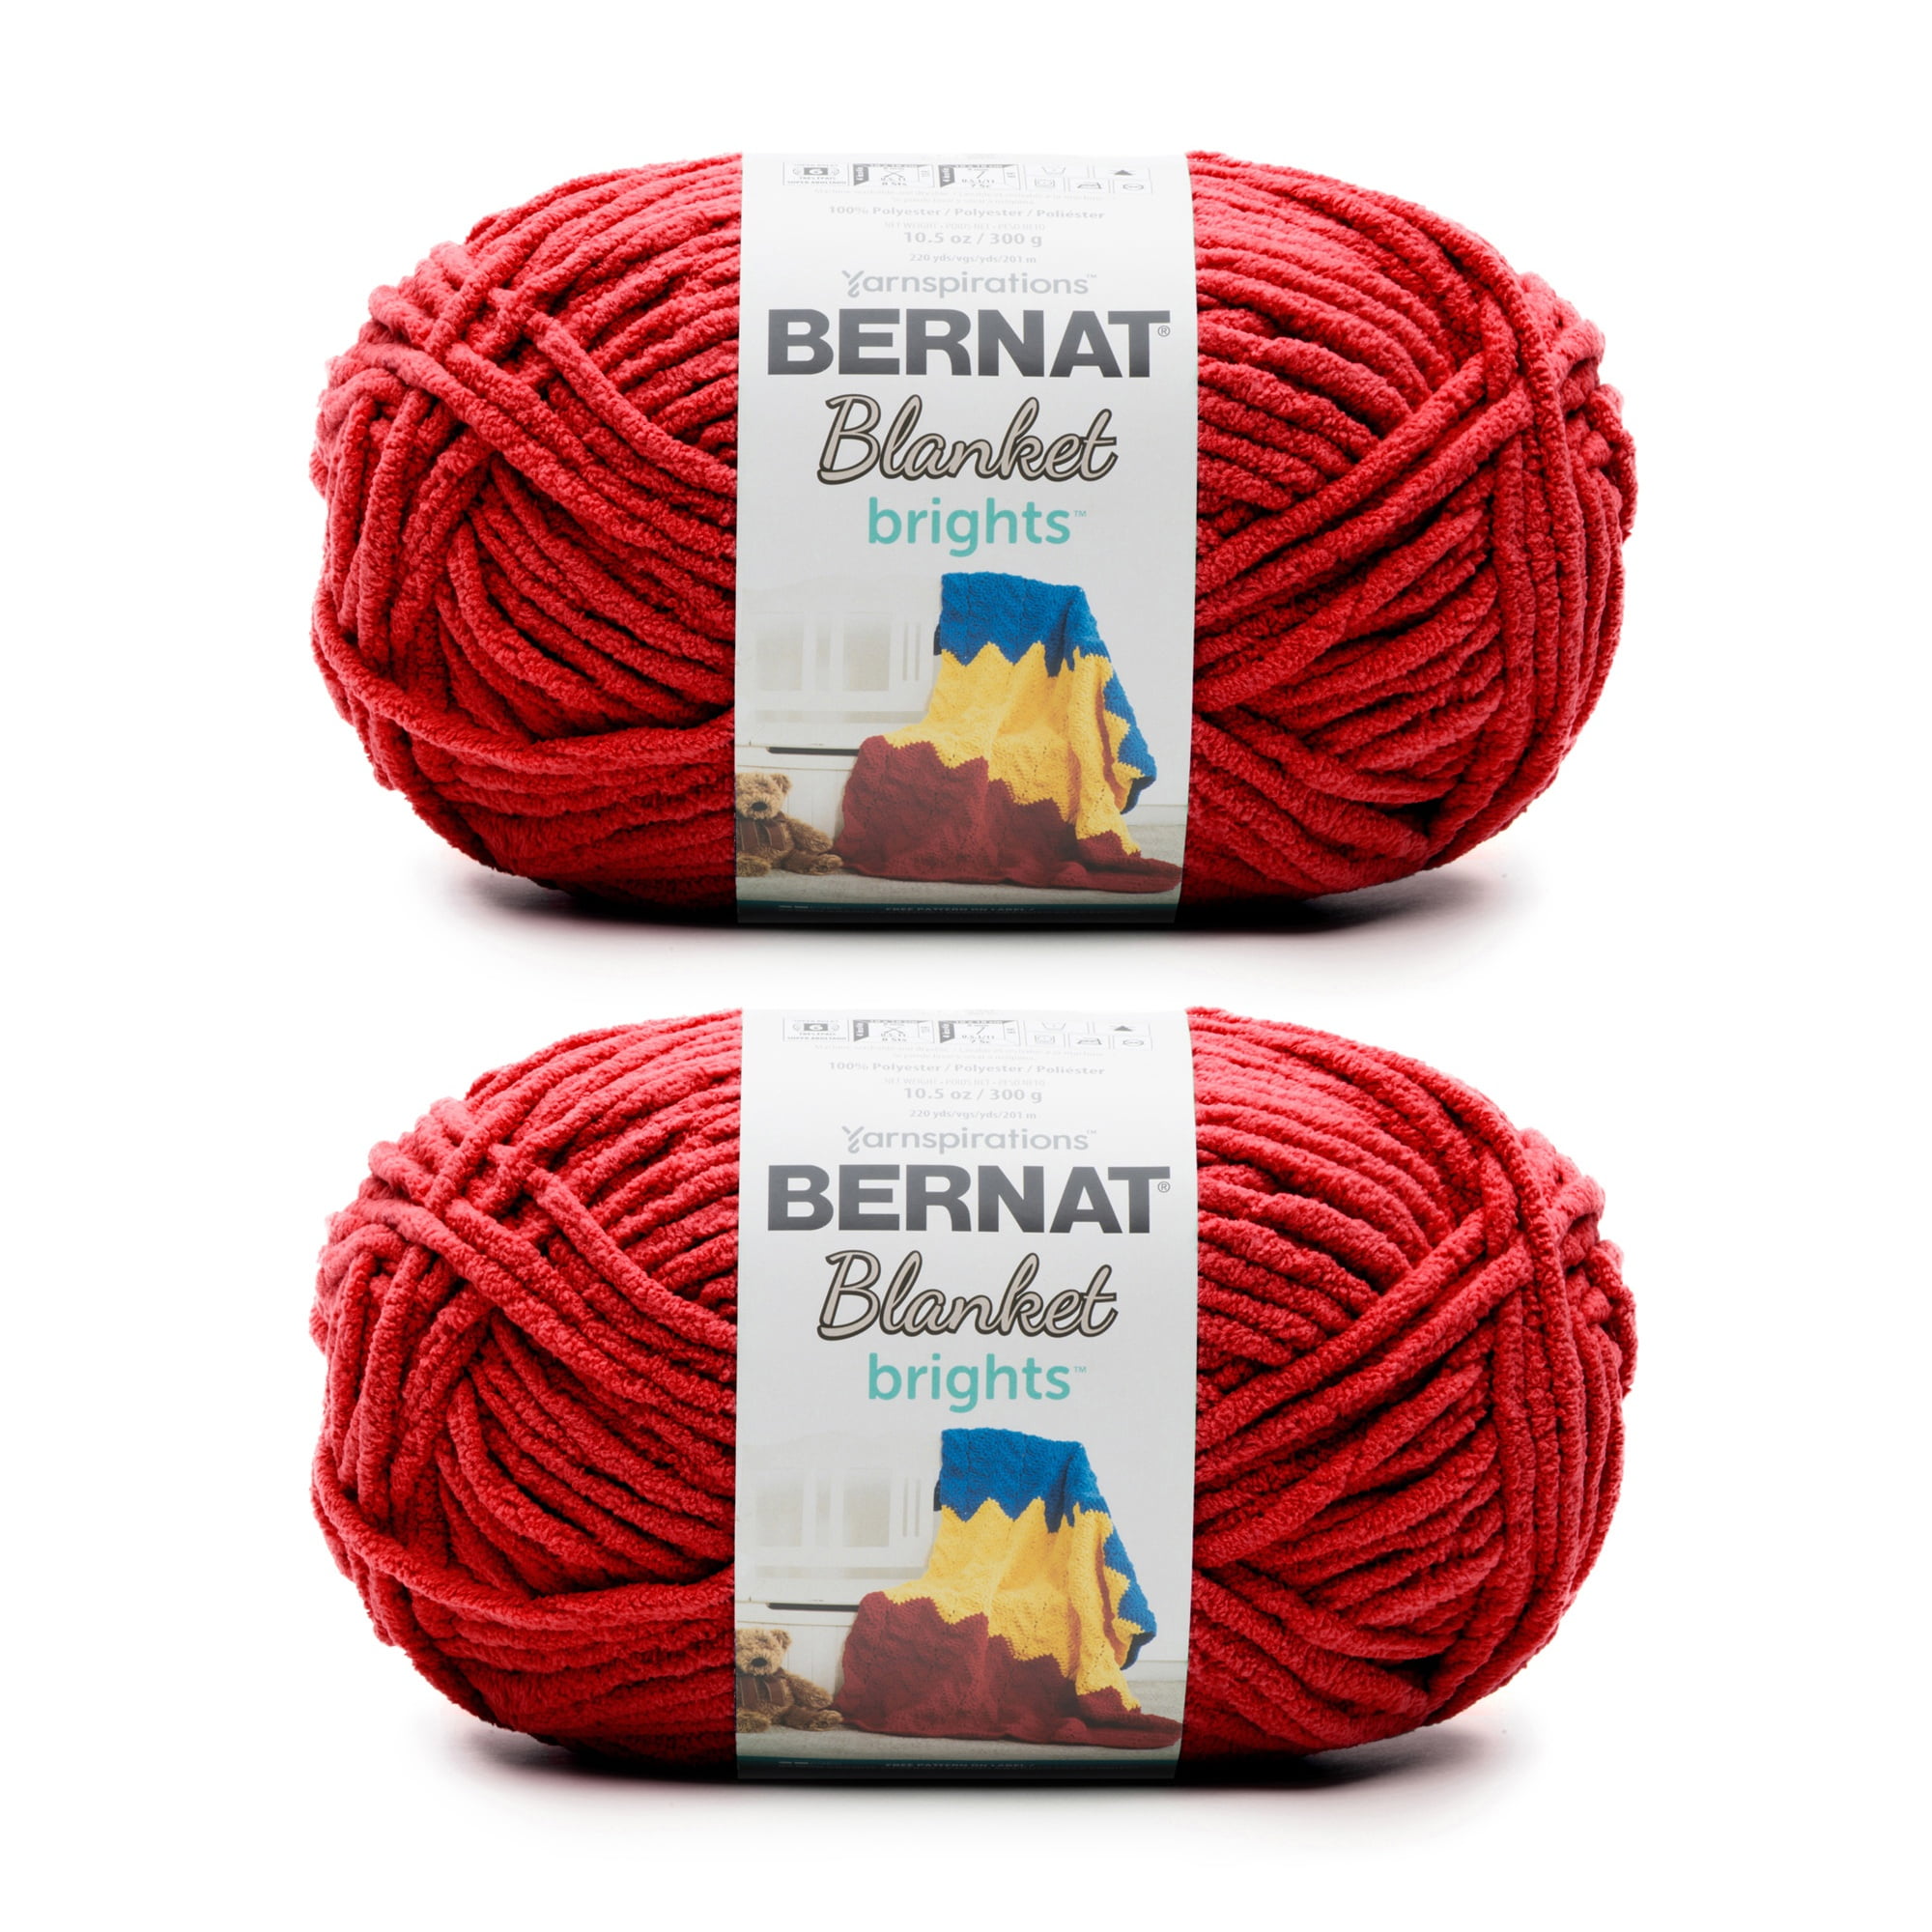 Bernat Forever Fleece #6 Super Bulky Polyester Yarn, Rumpus Red 9.9oz/280g, 194 Yards (2 Pack)